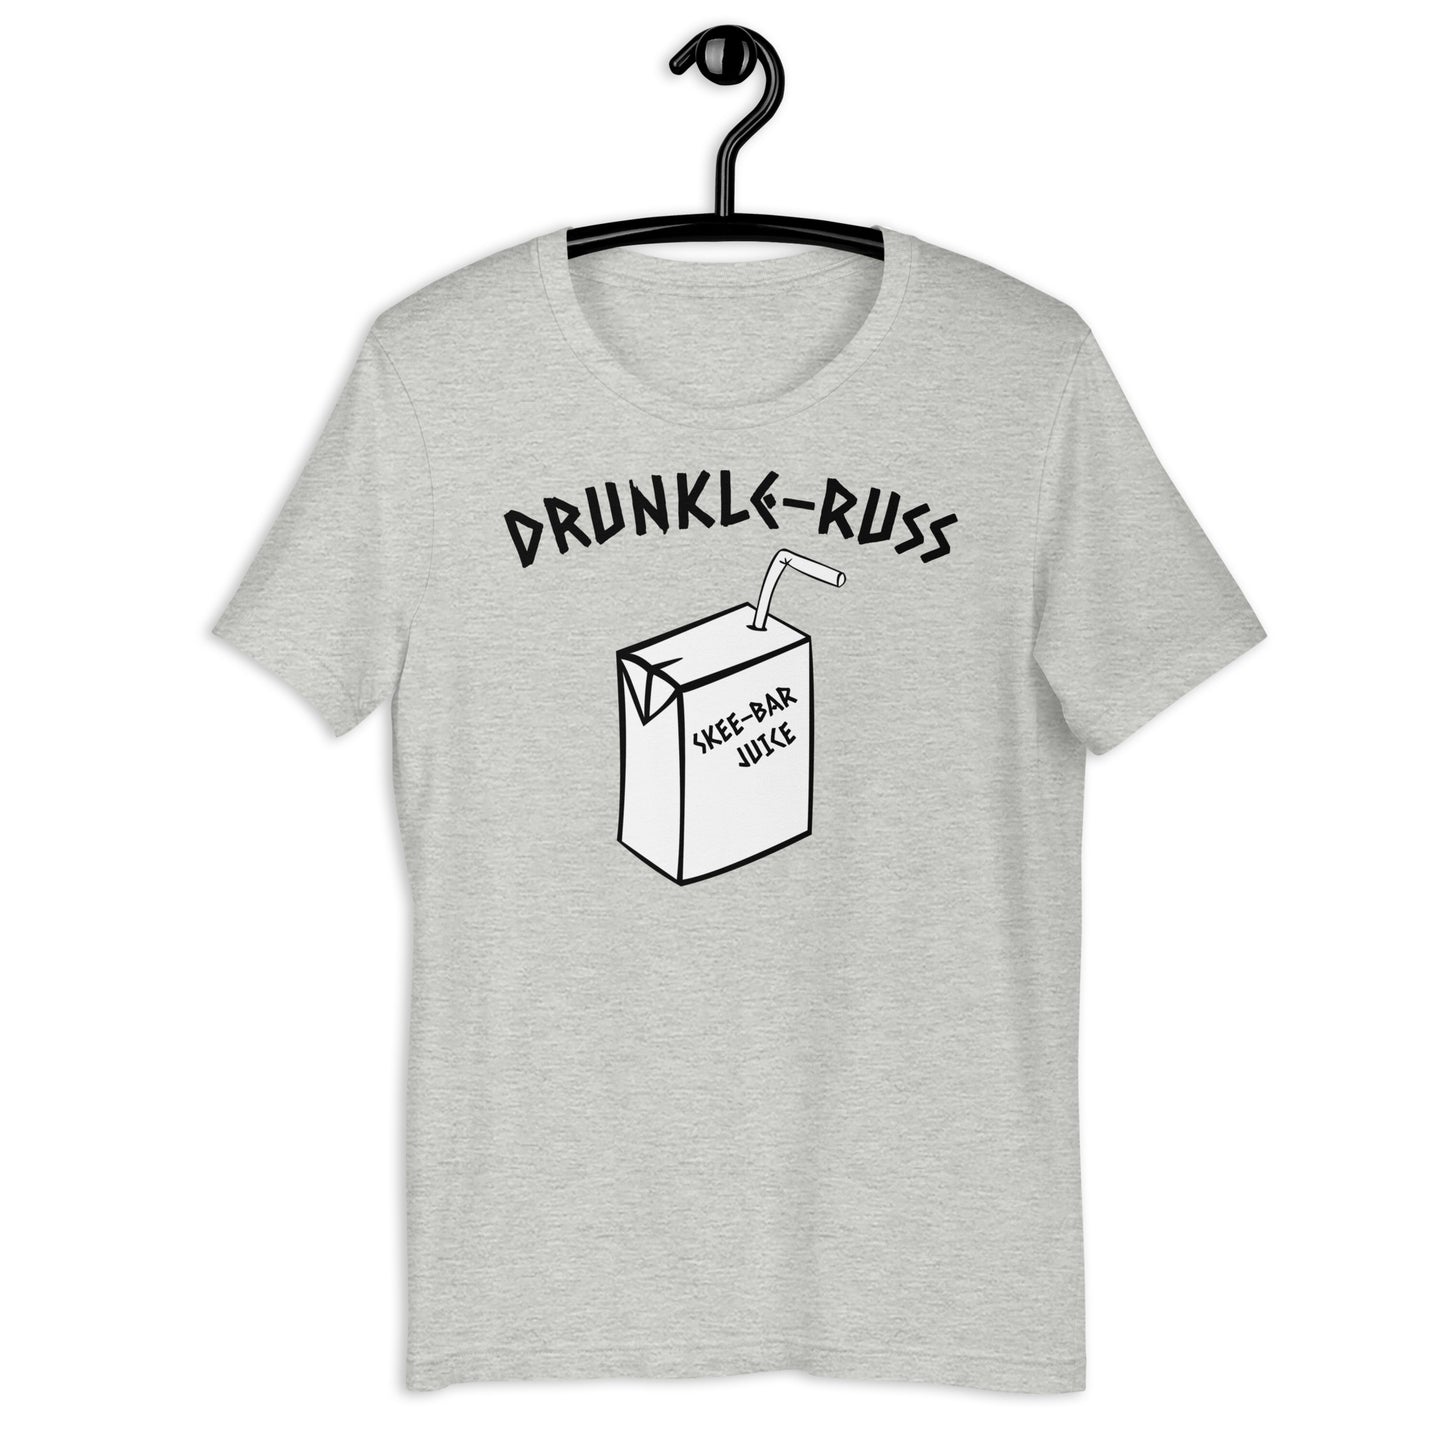 Drunkle-Russ Shirt